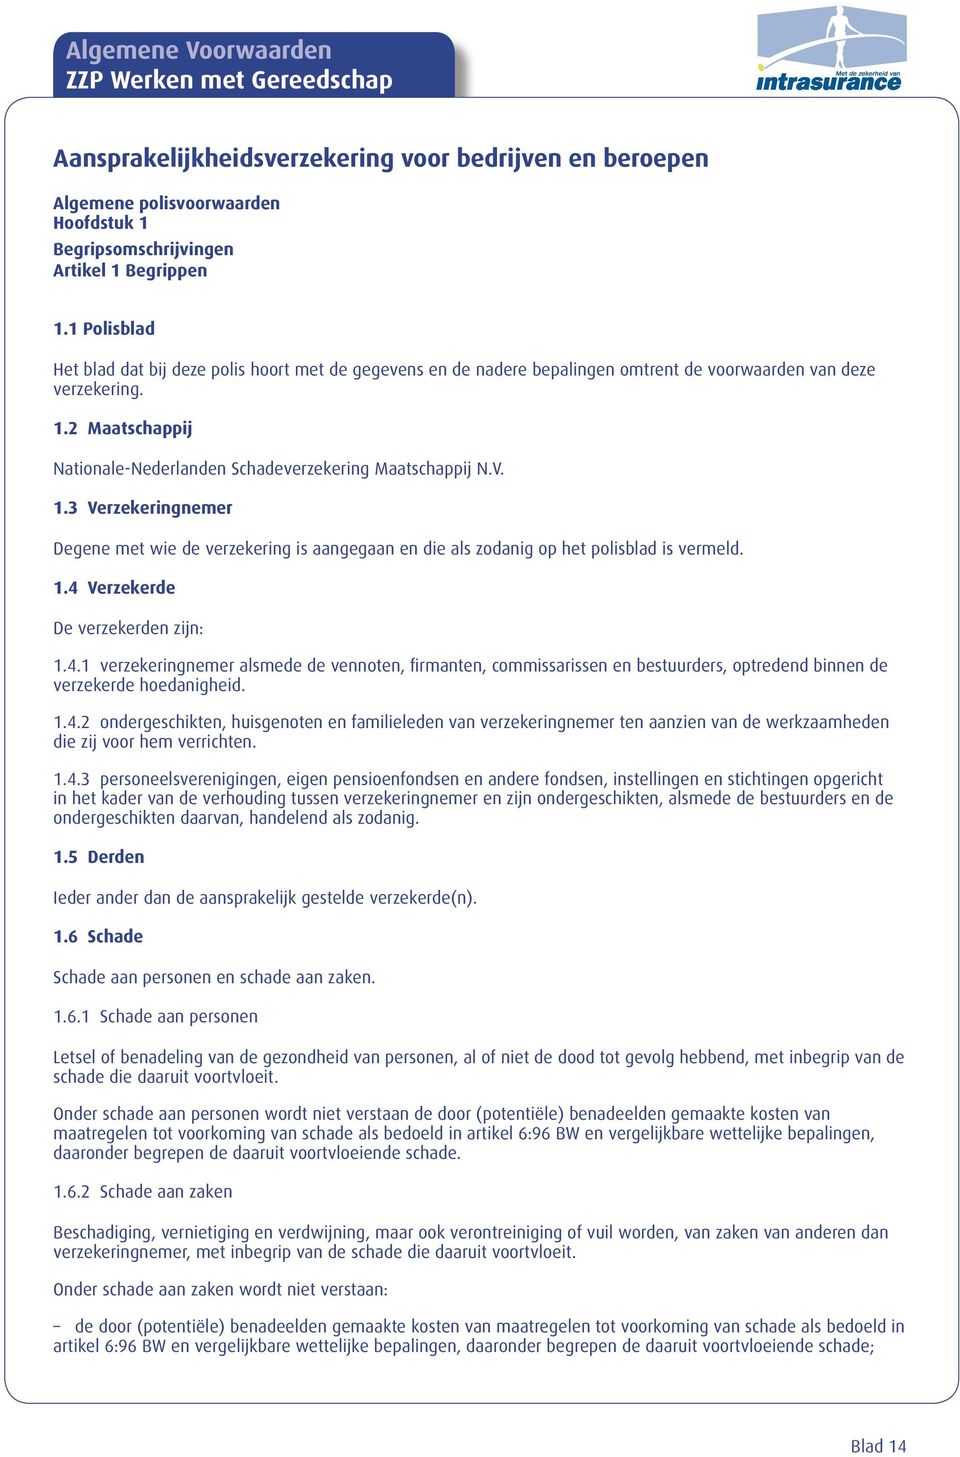 2 Maatschappij Nationale-Nederlanden Schadeverzekering Maatschappij N.V. 1.3 Verzekeringnemer Degene met wie de verzekering is aangegaan en die als zodanig op het polisblad is vermeld. 1.4 Verzekerde De verzekerden zijn: 1.